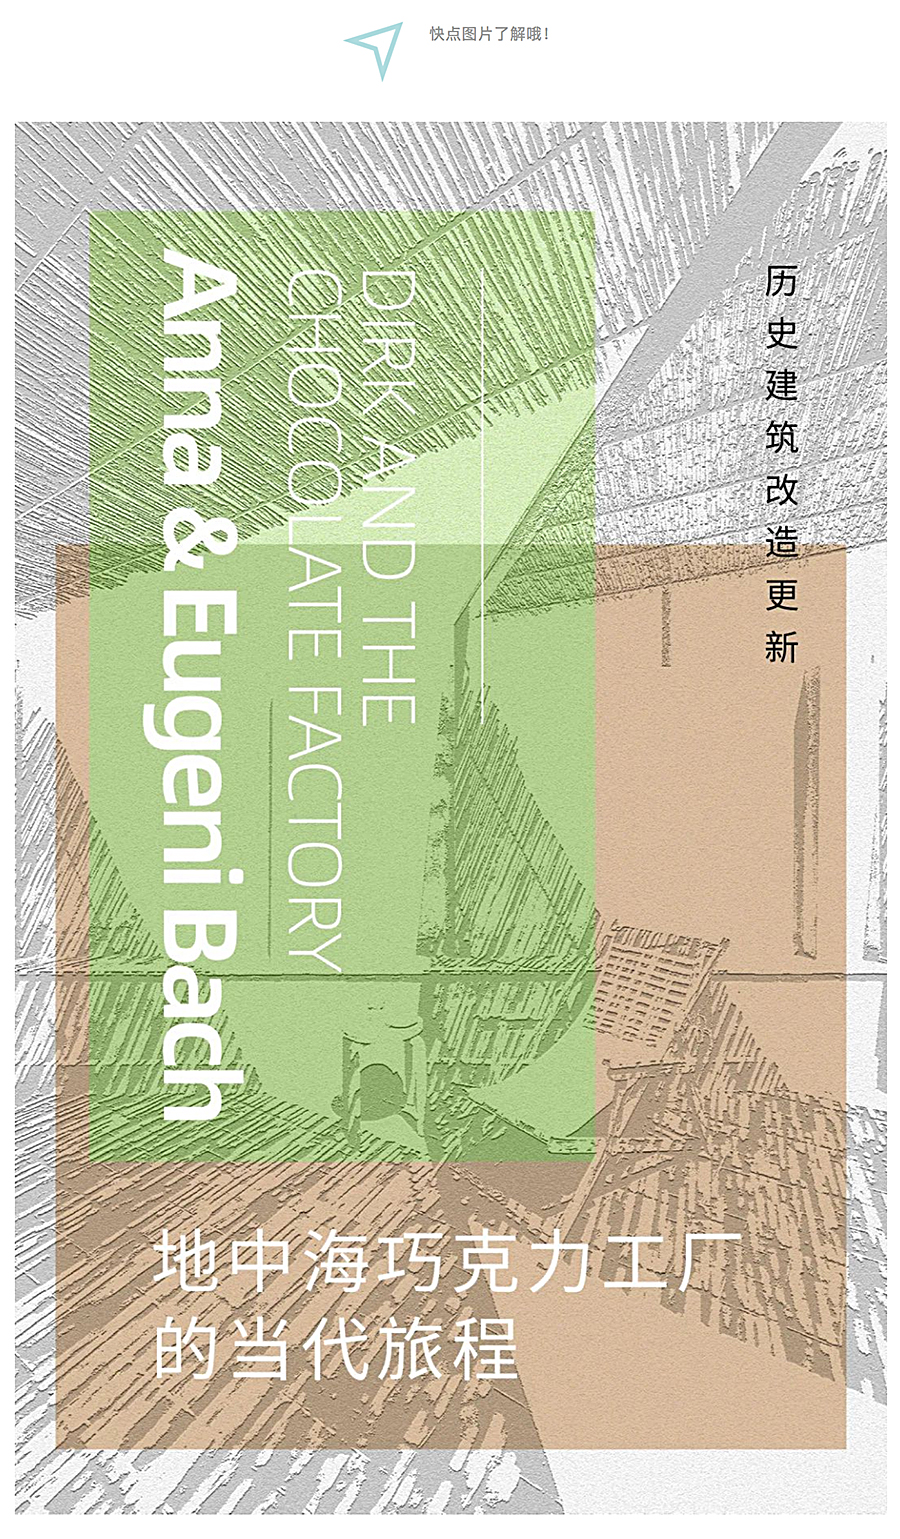 Renewal-Zone：地中海巧克力工厂的当代旅程︱历史建筑改造更新_0001_图层-2.jpg